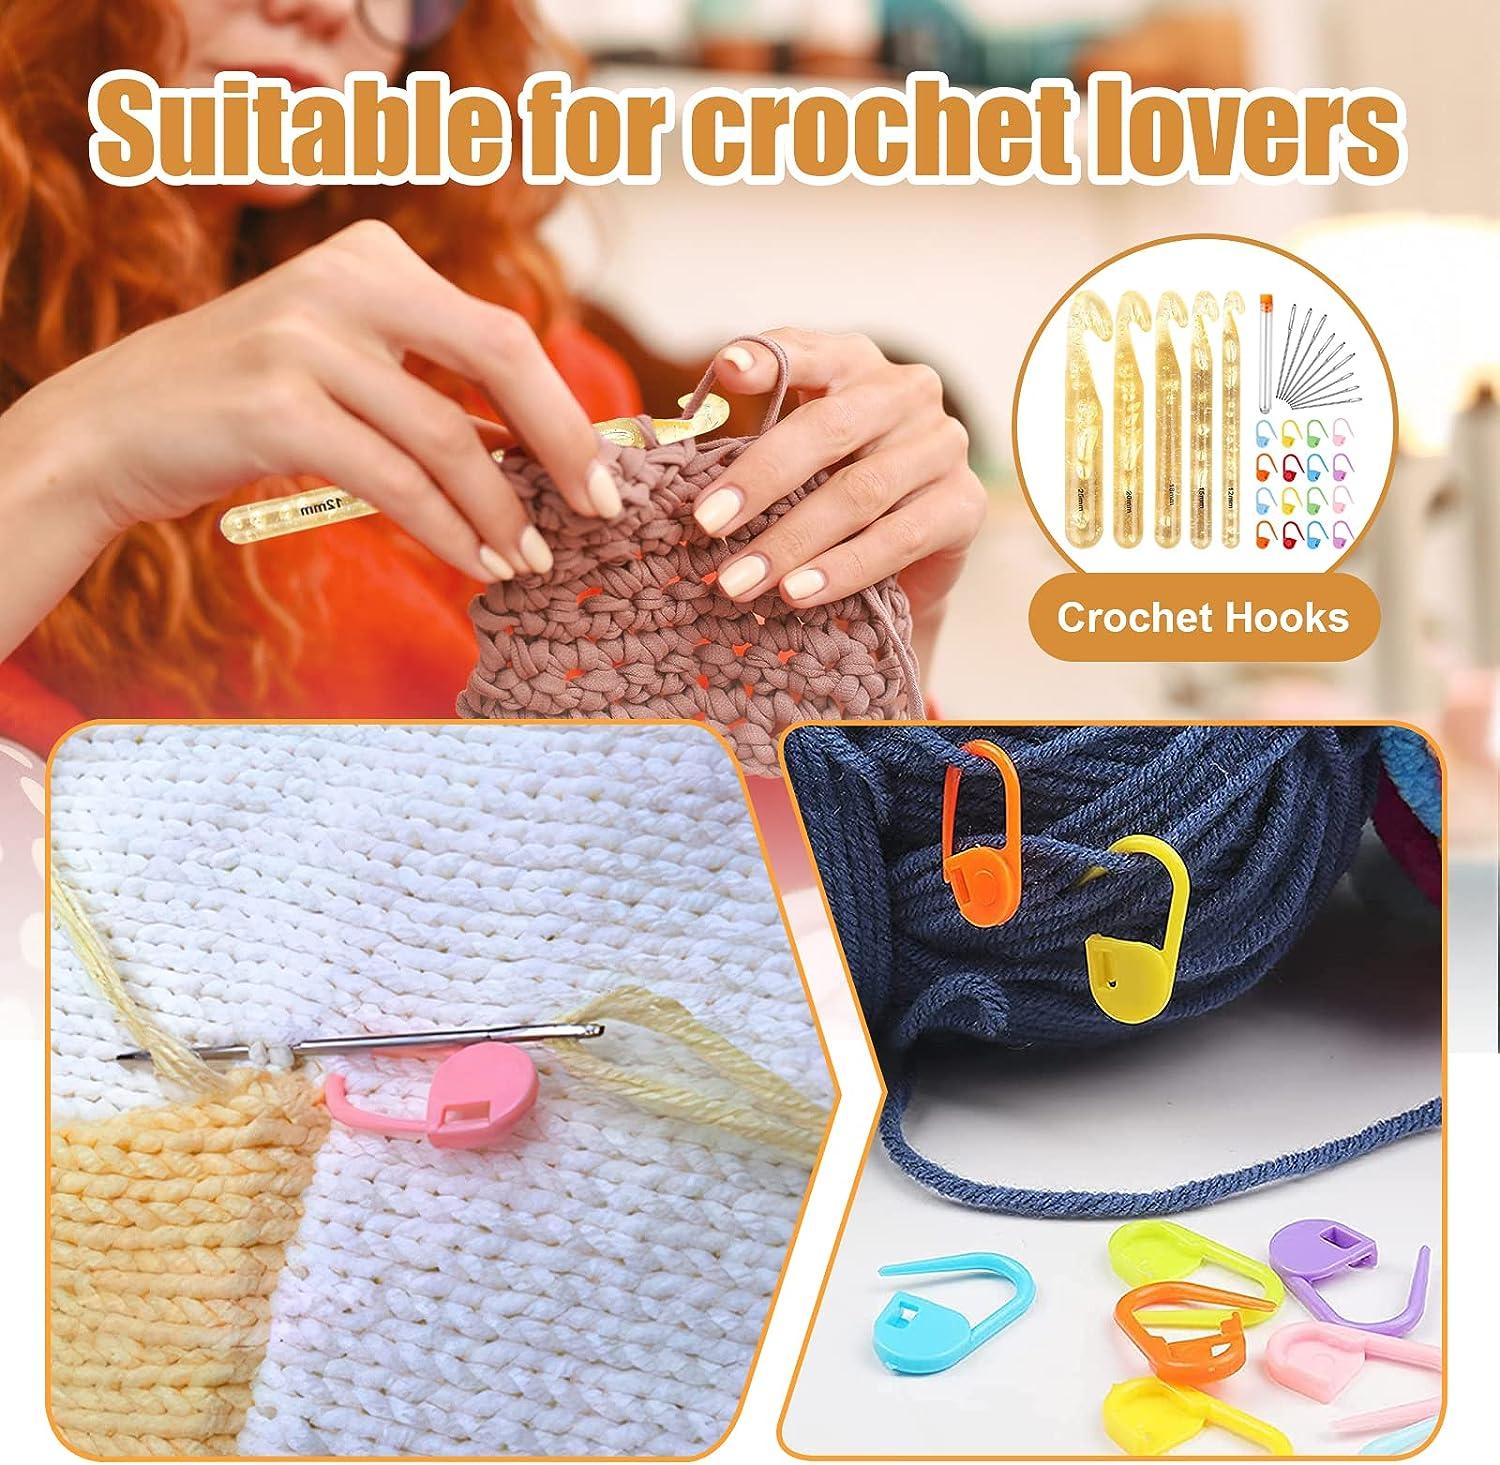  25 mm Crochet Hook, Large Crochet Hooks for Chunky